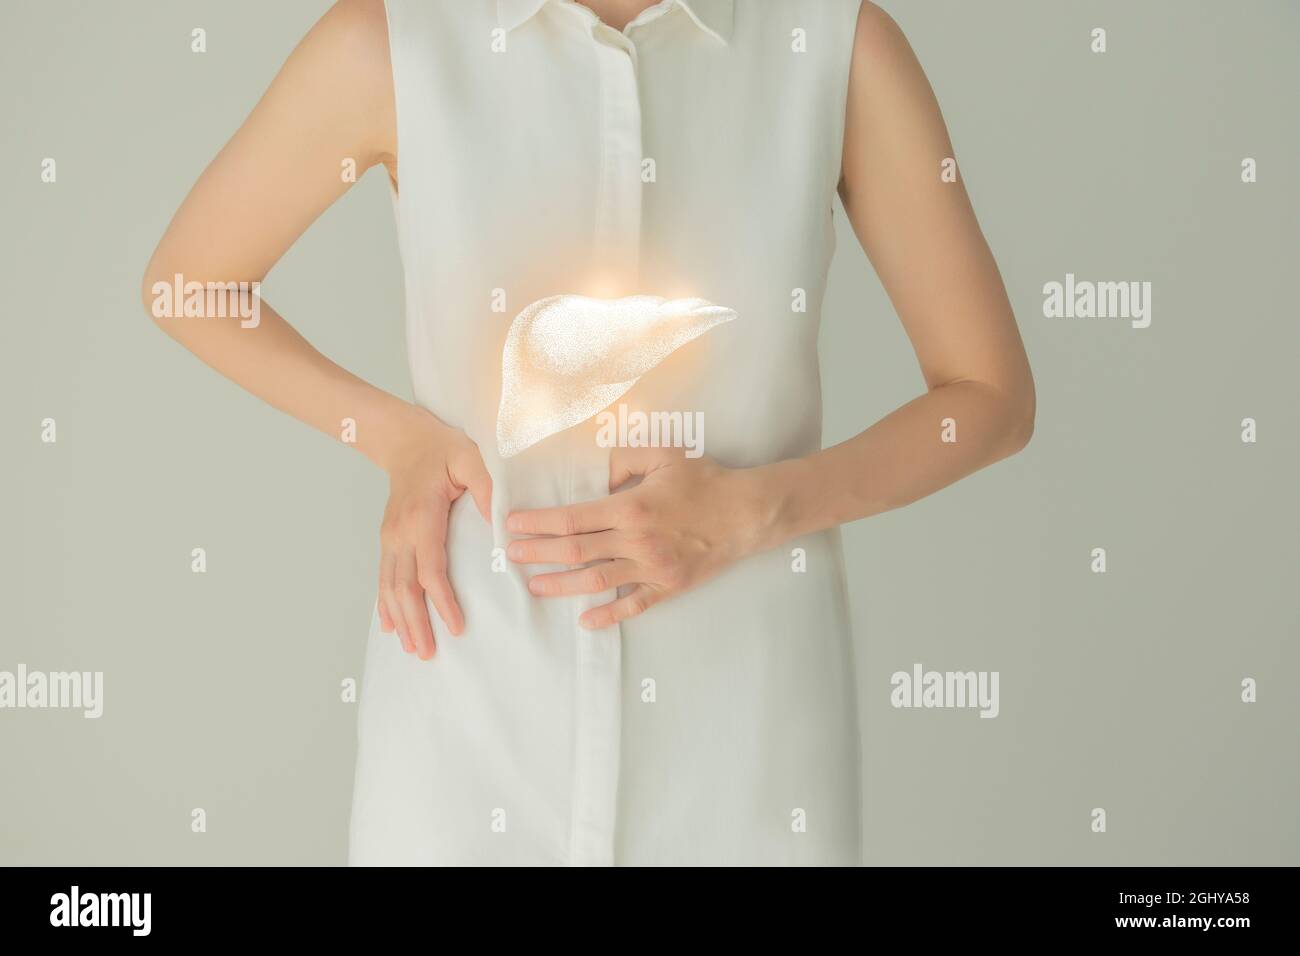 Paziente femminile irriconoscibile in abiti bianchi, evidenziato fegato di mano nelle mani. Concetto di problemi del sistema digestivo umano. Foto Stock